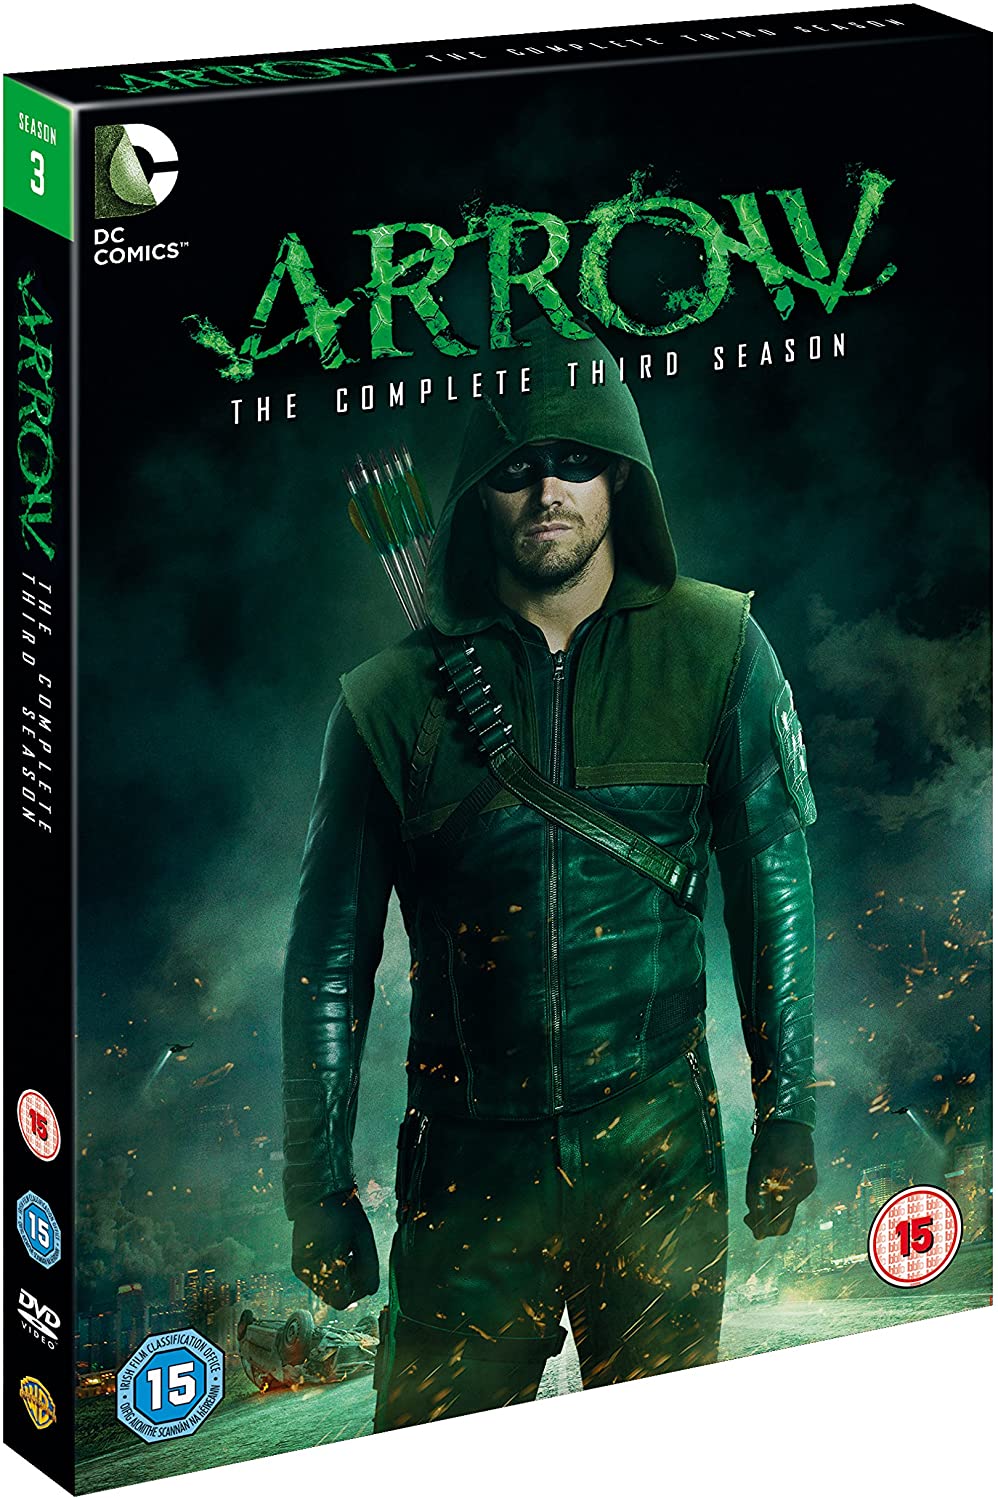 Arrow - Season 3 [DVD] [2015]